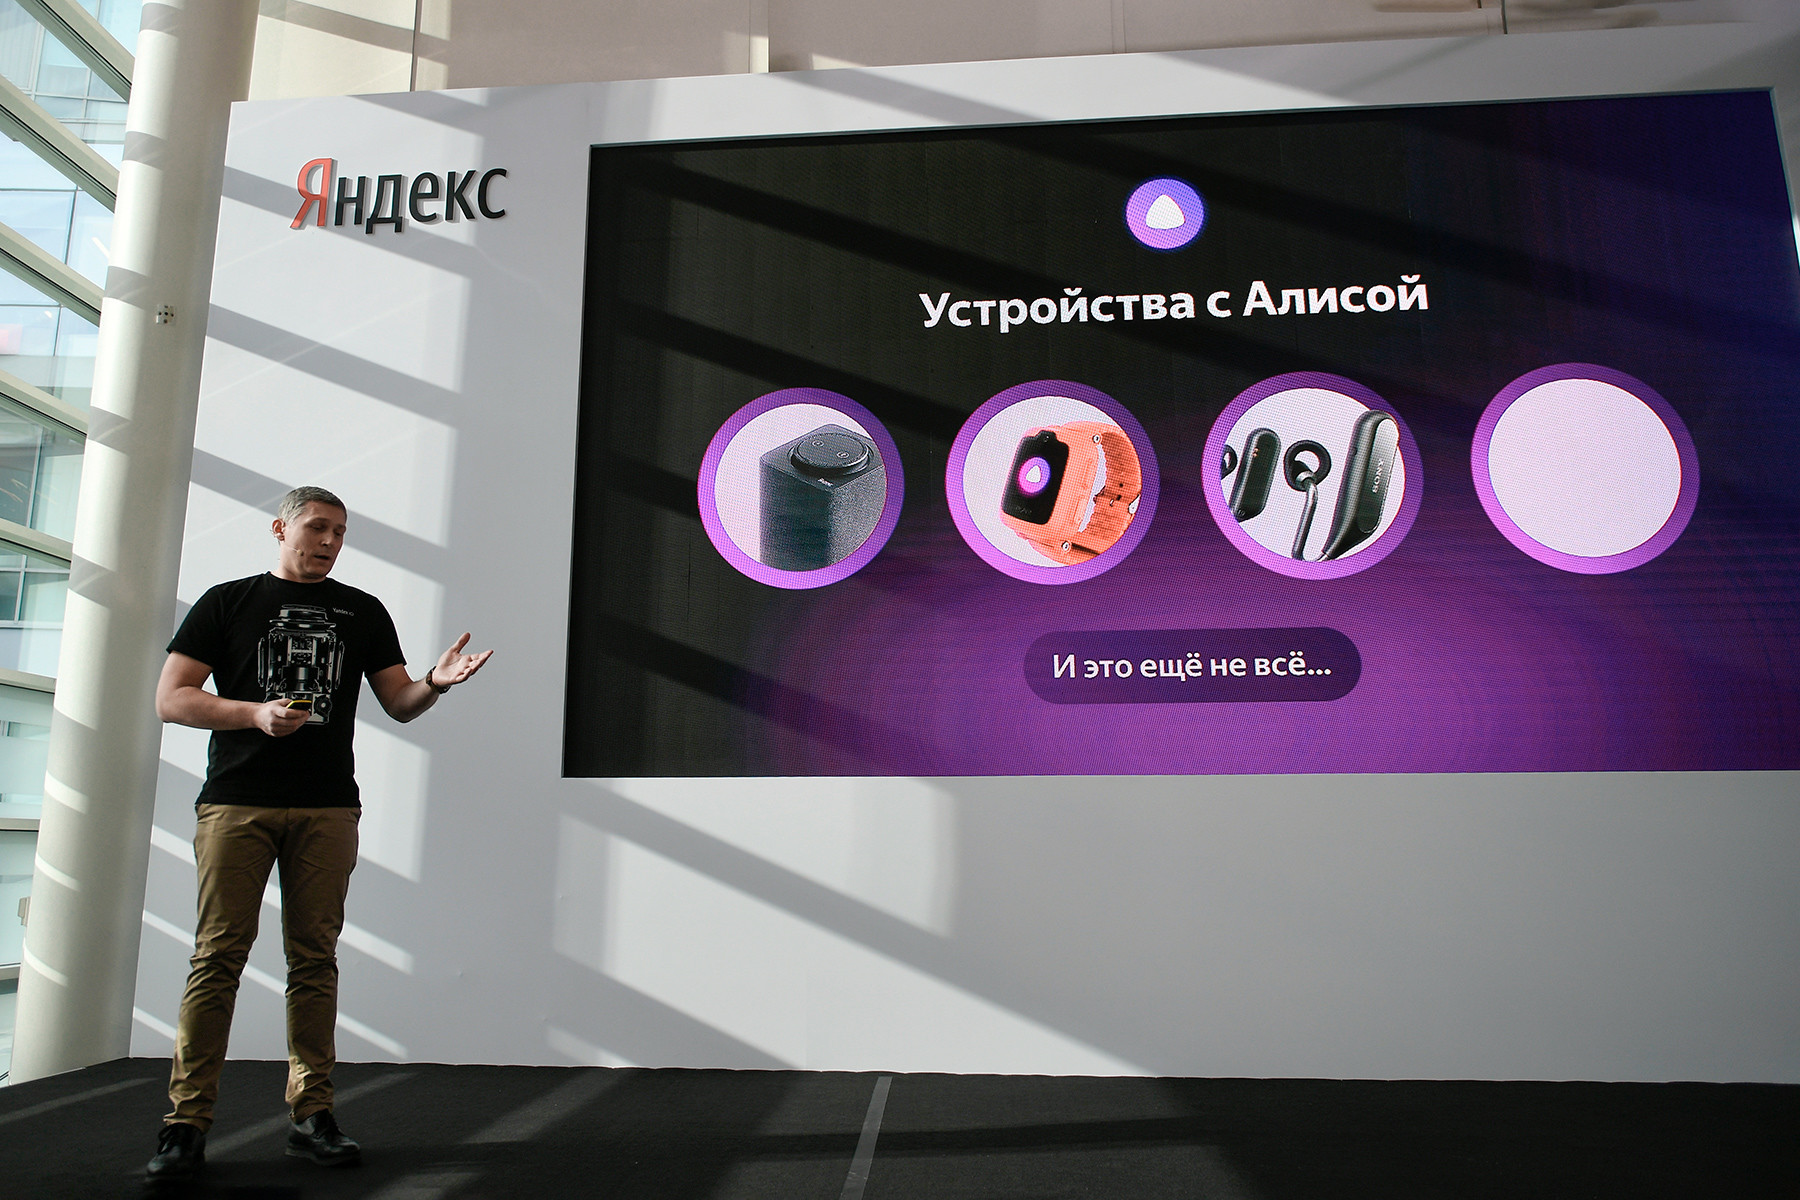 Директорот за експериментални производи на компанијата Јандекс Константин Круглов на презентацијата на нови производи на Јандекс.